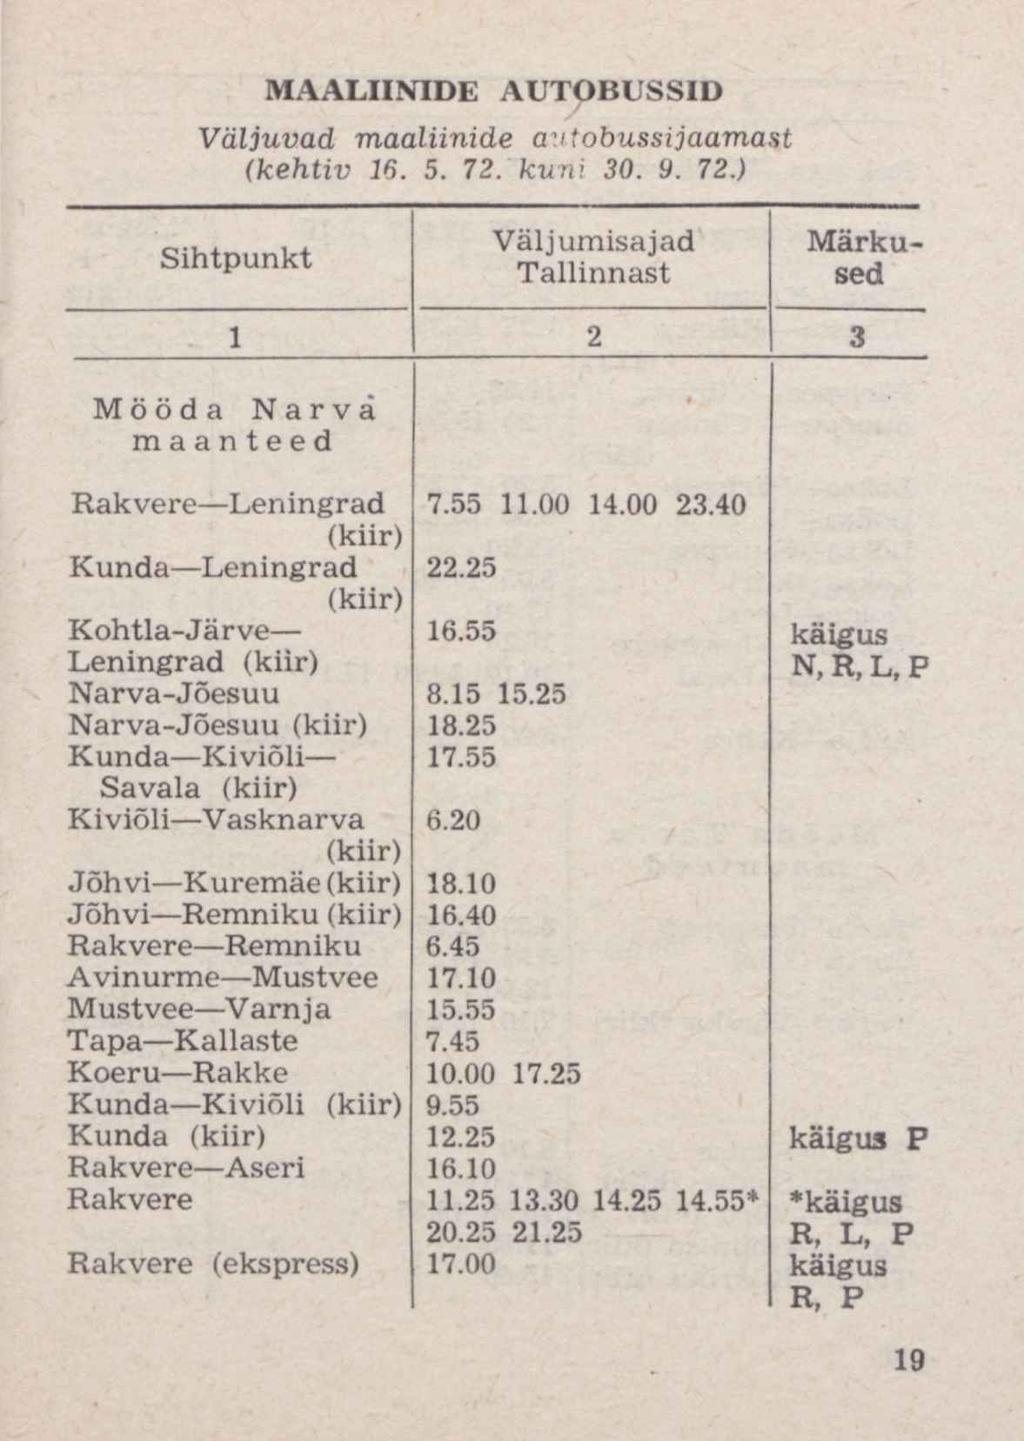 MAALIINIDE AUTOBUSSID Väljuvad maaliinide autobussijaamast (kehtiv 16. 5. 72. kuni 30. 9. 72.) Sihtpunkt Väljumisajad Tallinnast Märkused 1 2 3 Mööda Narva maanteed Rakvere Leningrad 7.55 11.00 14.